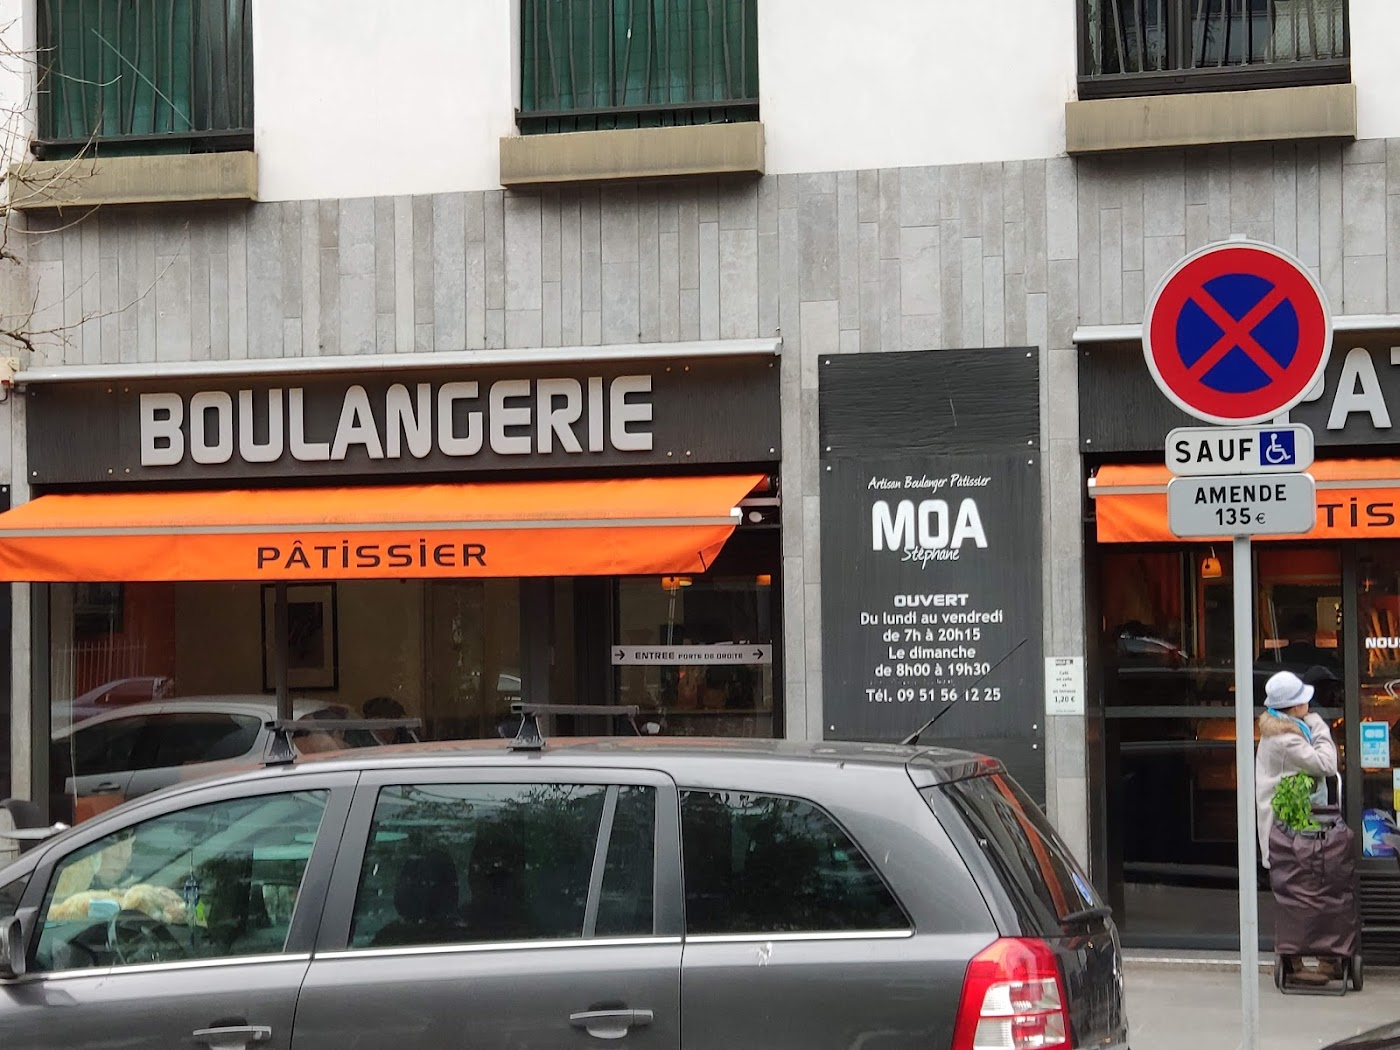 Boulangerie artisanale Stéphane Moa